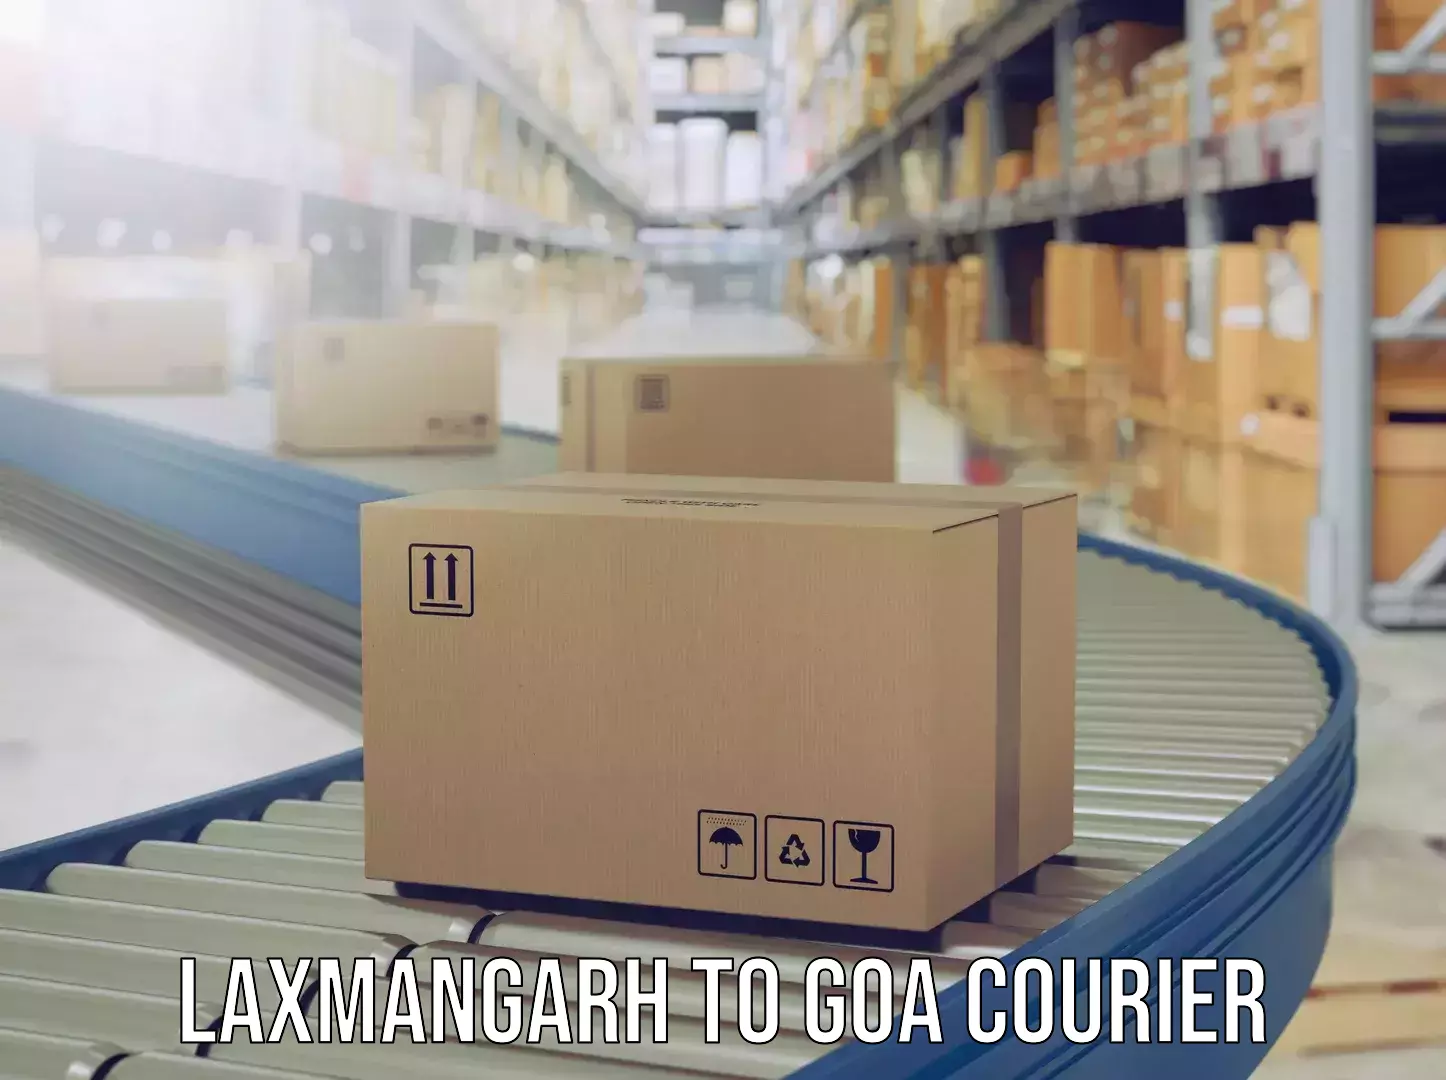 Luggage shipment tracking Laxmangarh to Canacona